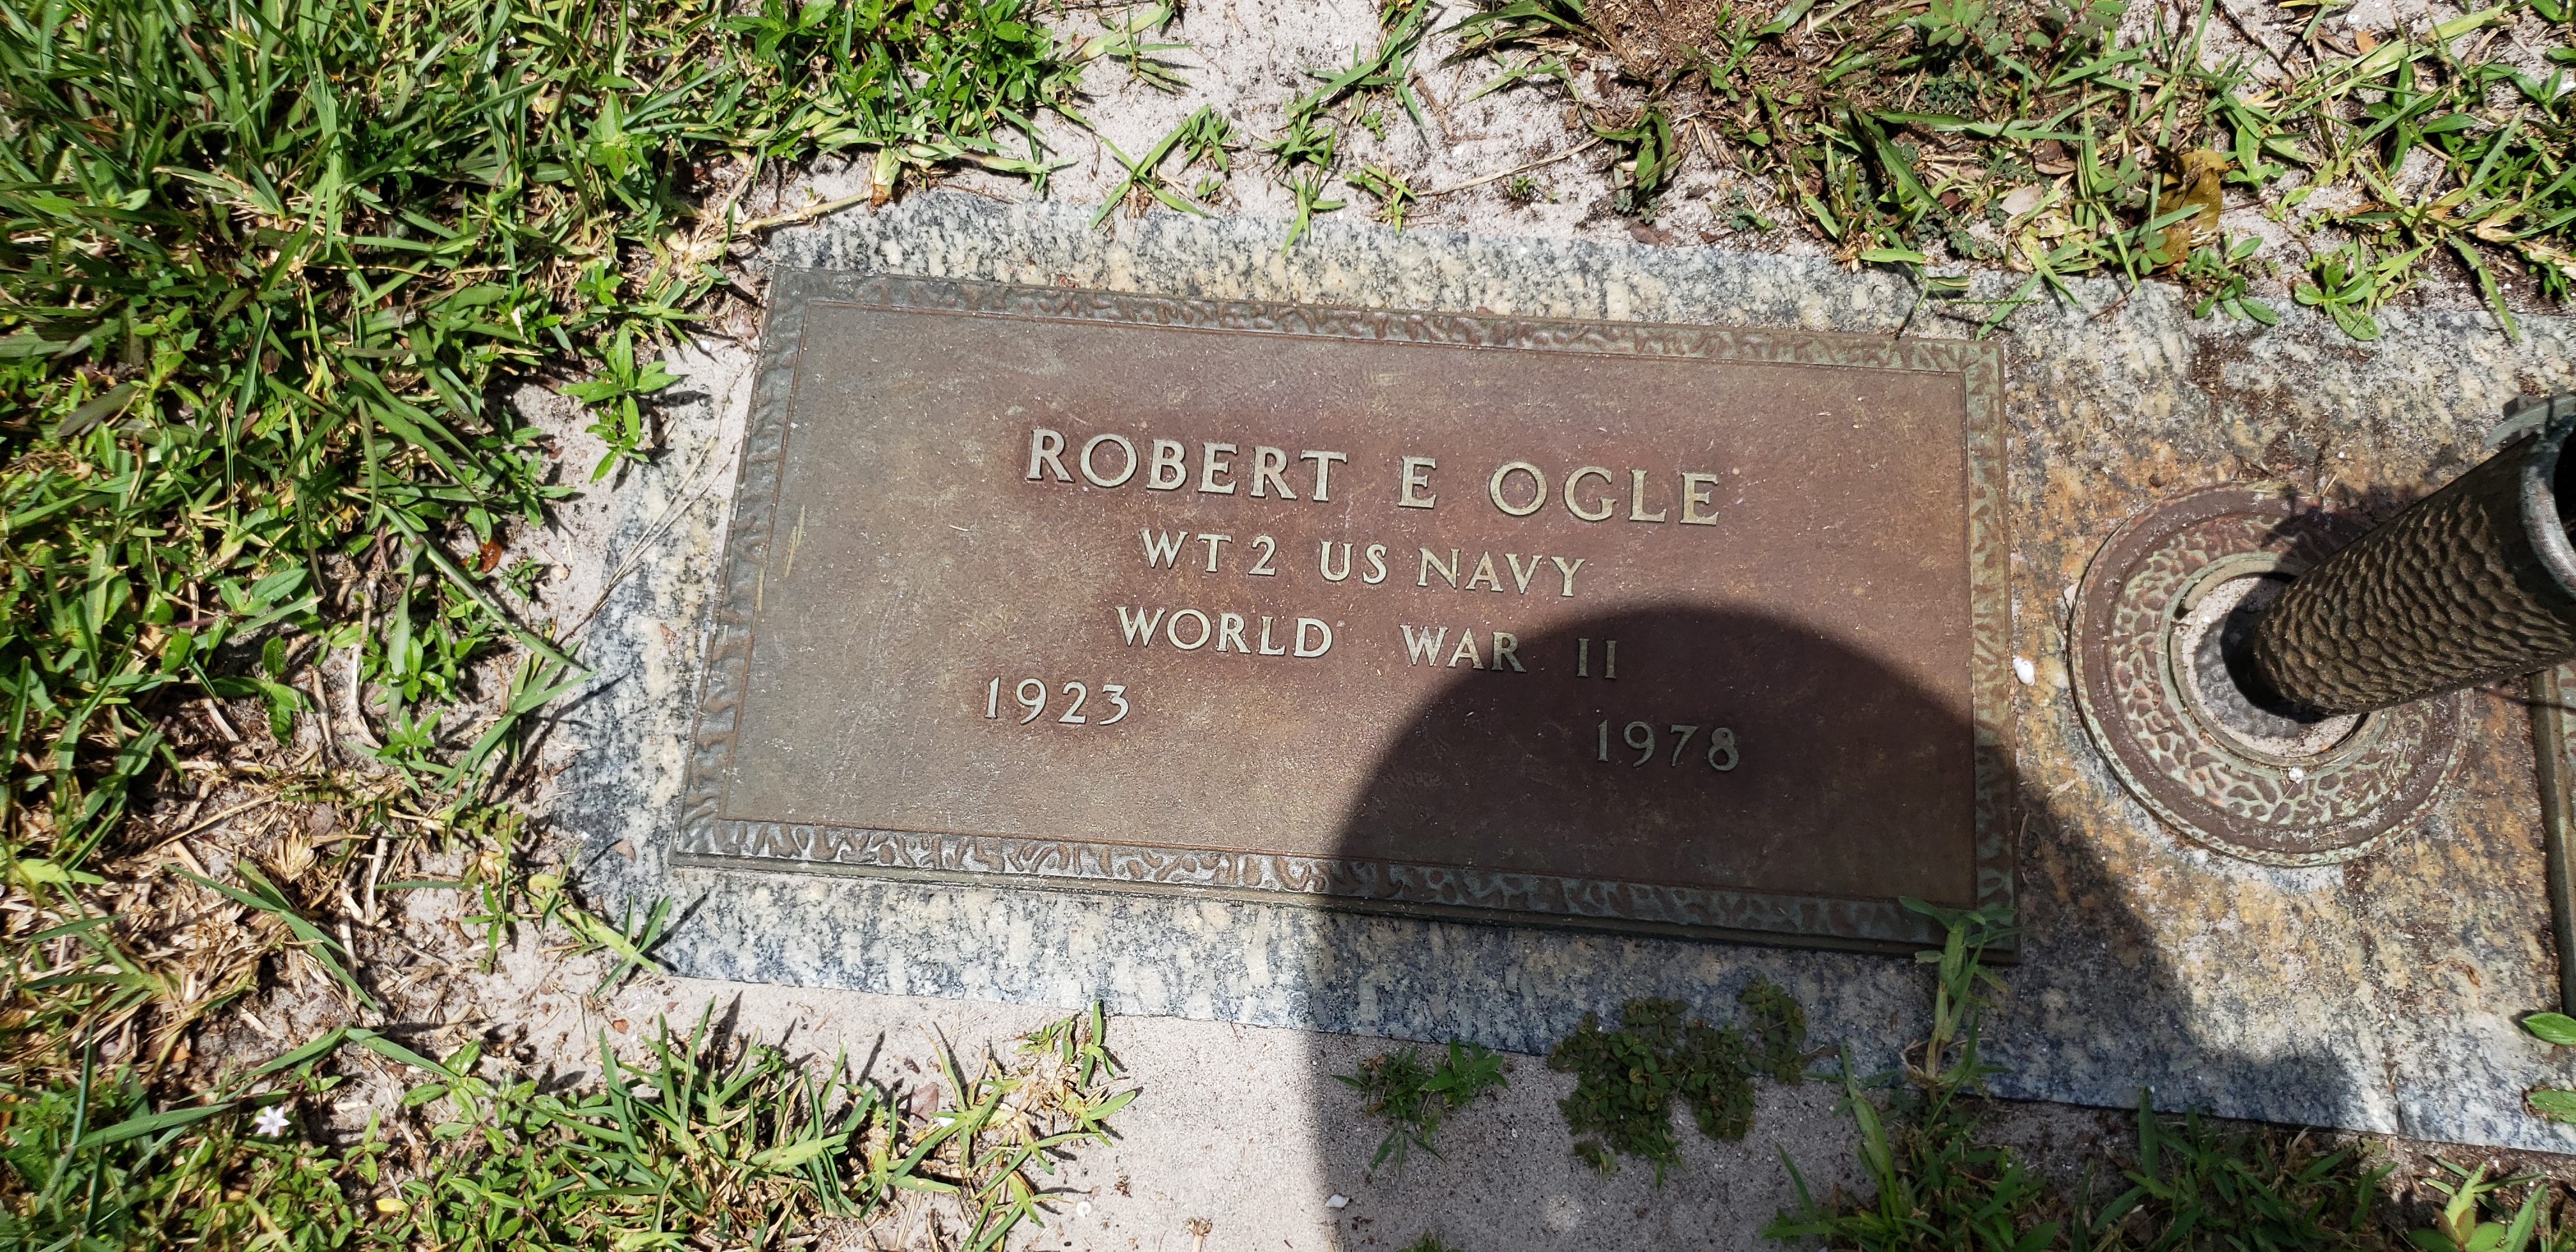 Robert E Ogle